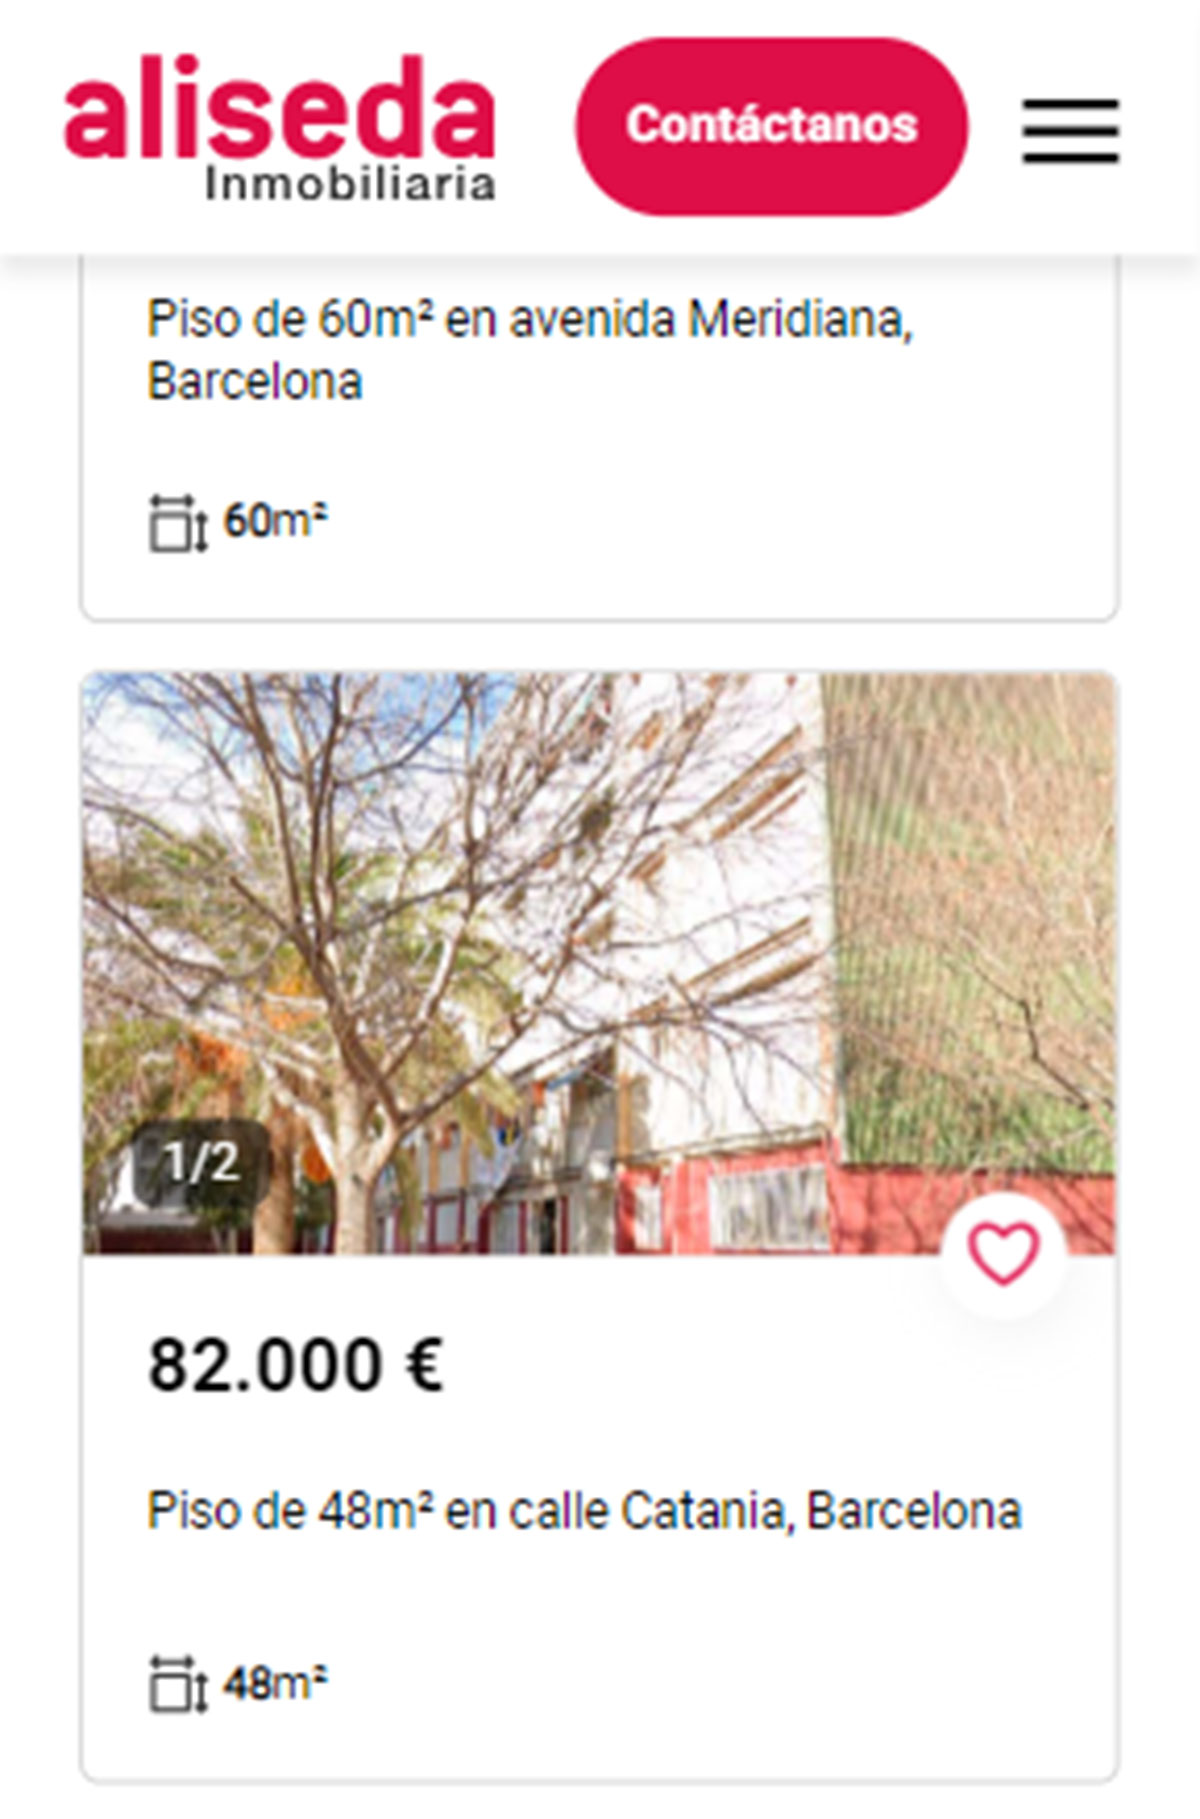 Piso en Barcelona por 82.000 euros